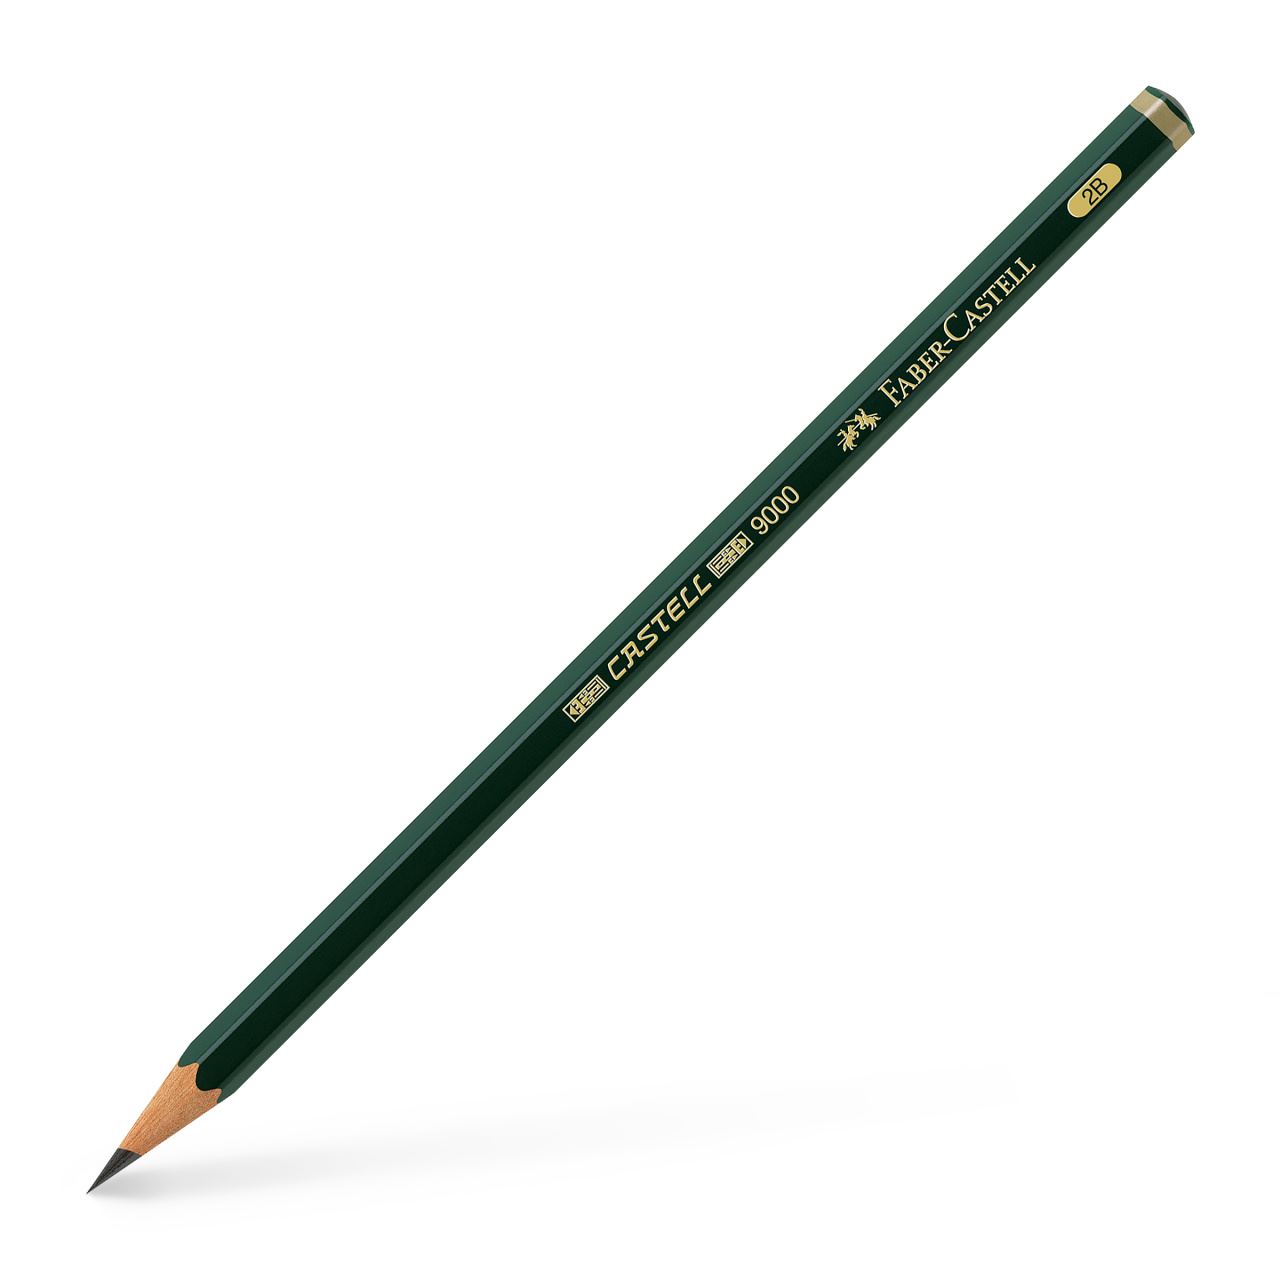 Faber-Castell - Castell 9000 Bleistift, 2B